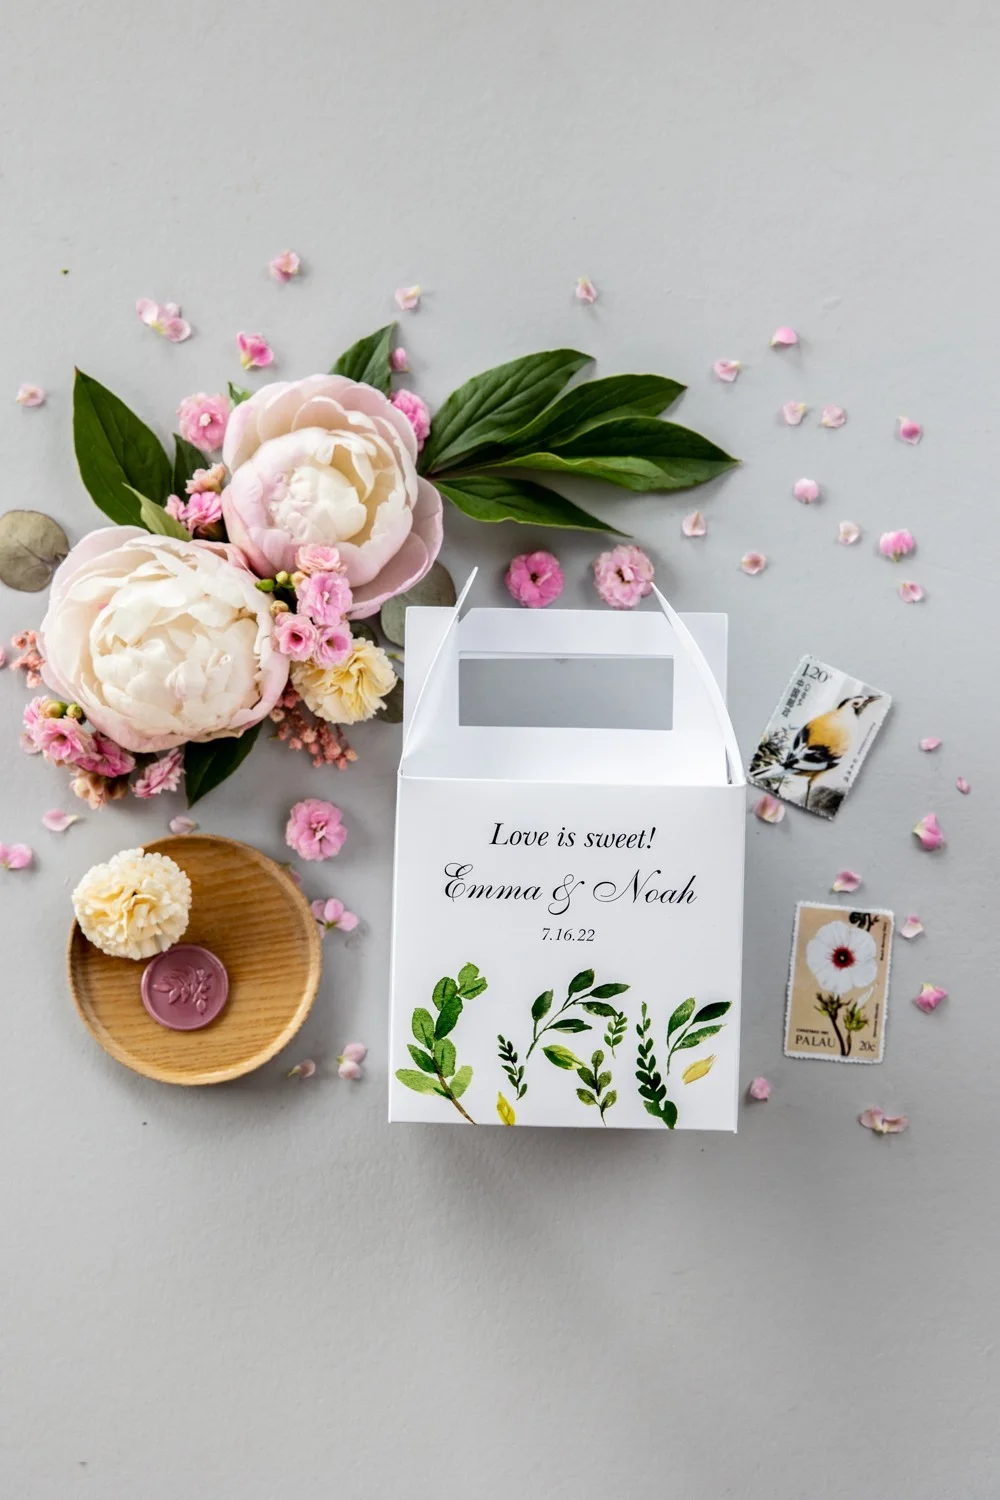 Cajas de regalo de boda boho para invitados con nombres | Regalos de despedida de soltera